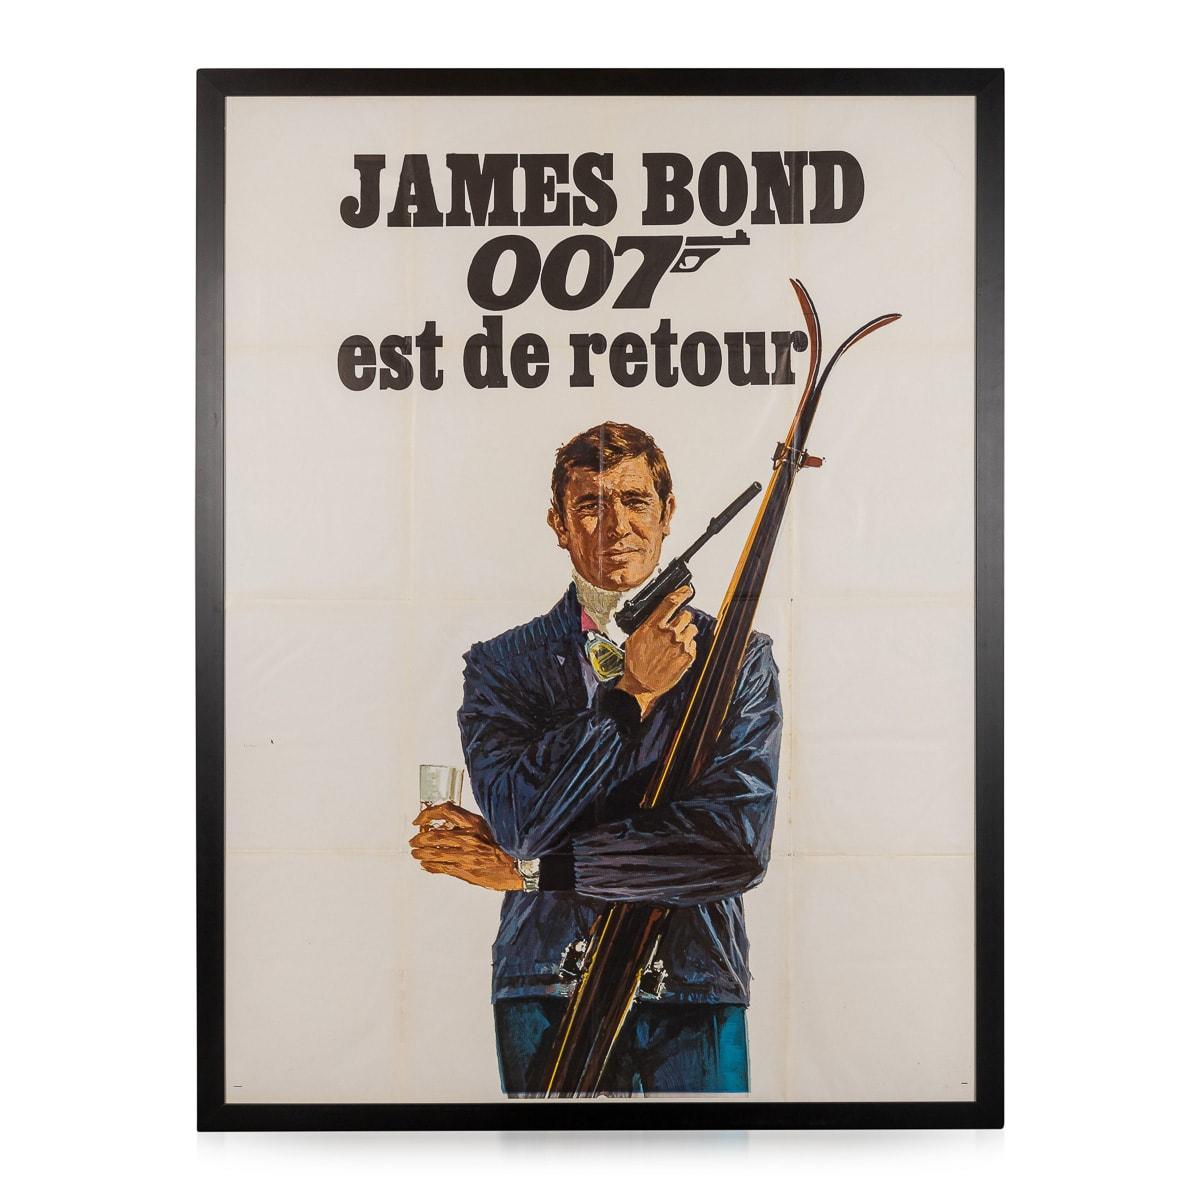 Ein Spionagefilm und der sechste Teil der James-Bond-Reihe, produziert von Eon Productions. Der Film basiert auf dem 1963 erschienenen Roman von Ian Fleming. Nachdem Sean Connery beschlossen hatte, sich nach You Only Live Twice von der Rolle